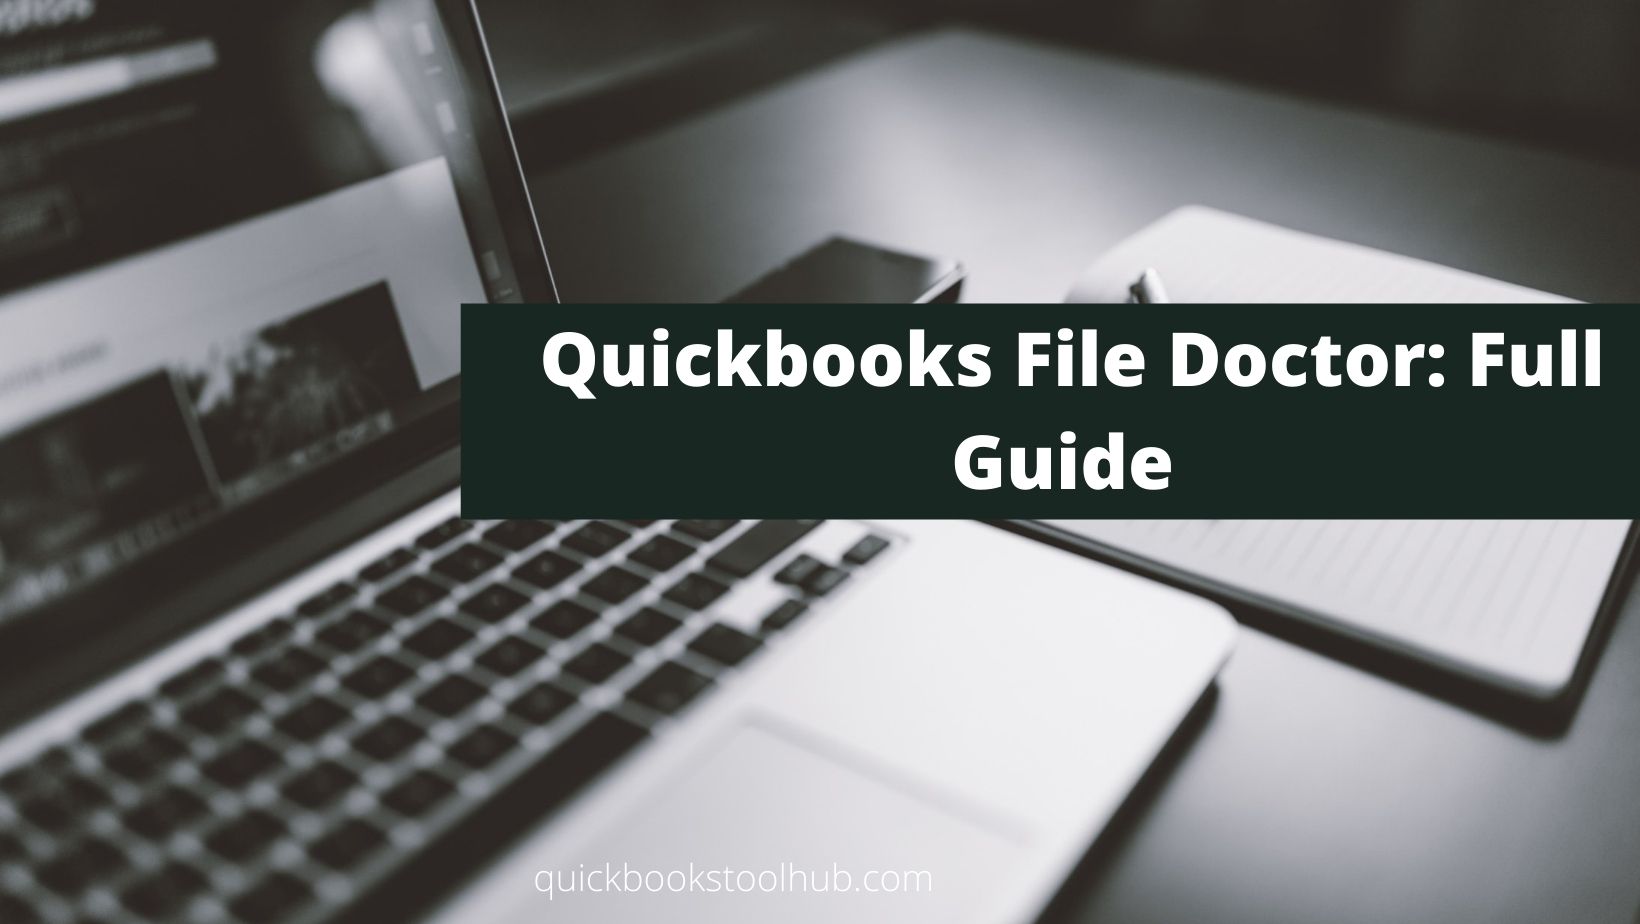 QuickBooks File Doctor: Full Guide